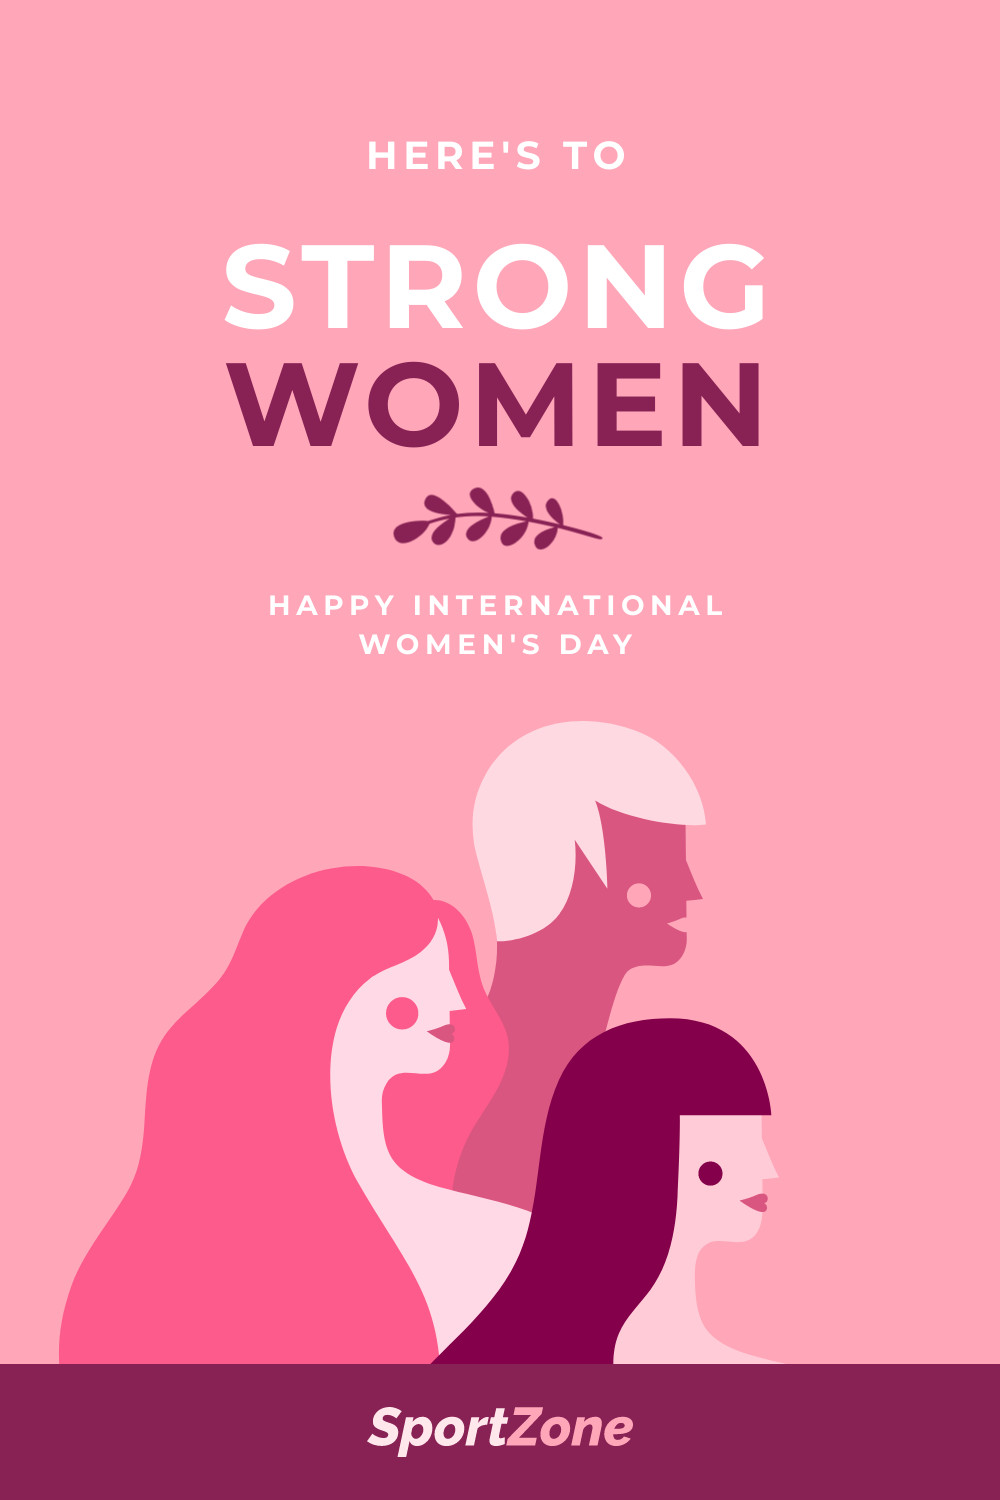 International Women's Day Strong Women